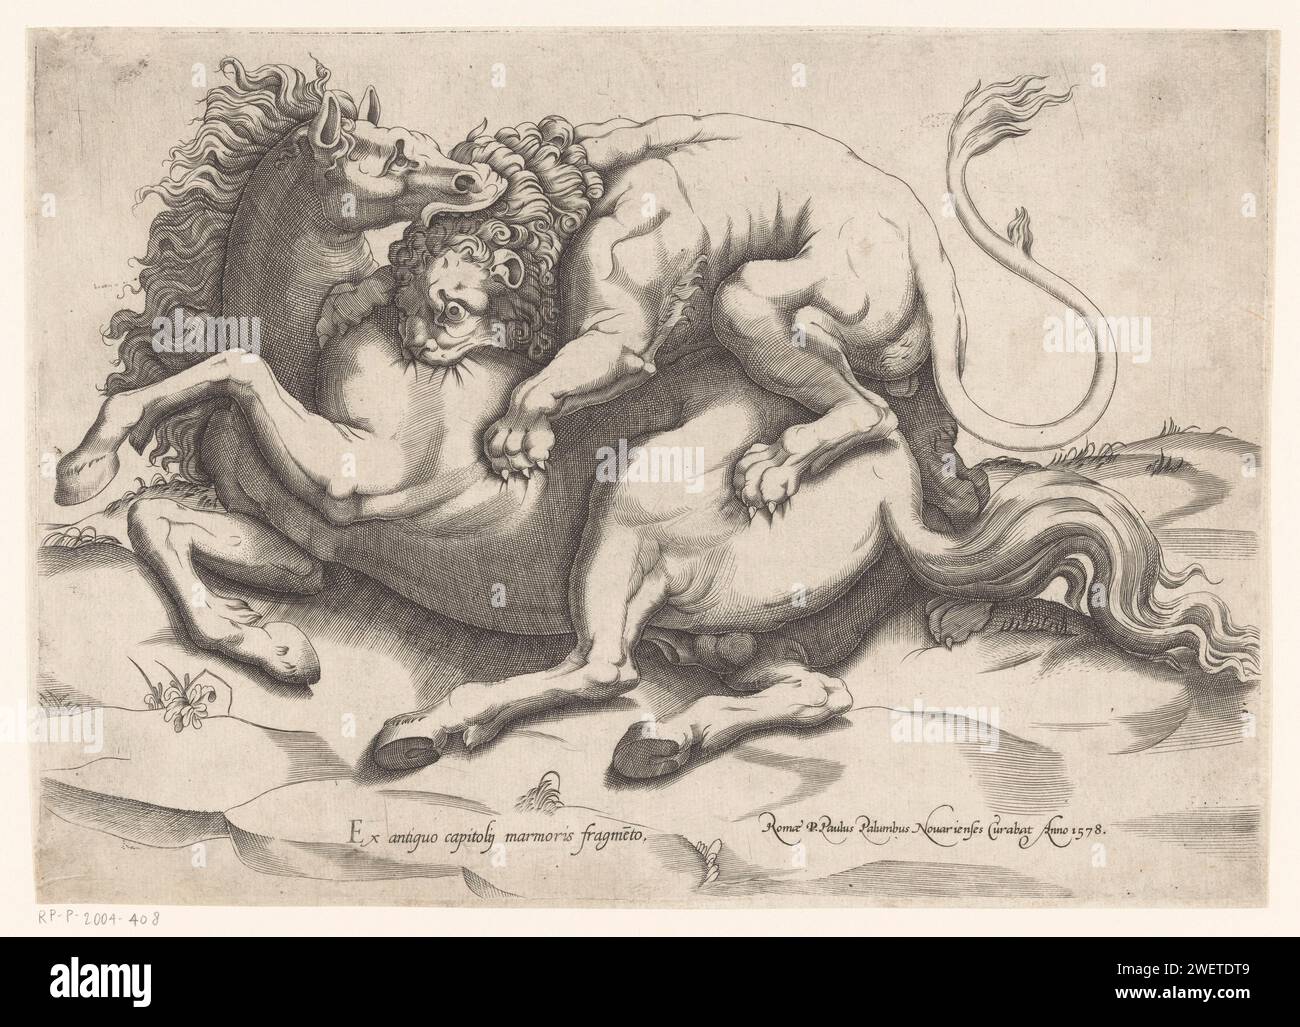 Cheval attaqué par un lion, 1578 imprimer Un lion et un cheval en combat. Le lion gravit le cheval lors d'une attaque. Il se mordit dans la peau du cheval, tandis que le cheval à son tour mordait la tête du lion. gravure sur papier bêtes de proie, animaux prédateurs : lion. cheval. animaux (+ animaux de combat ; relations agressives) Banque D'Images